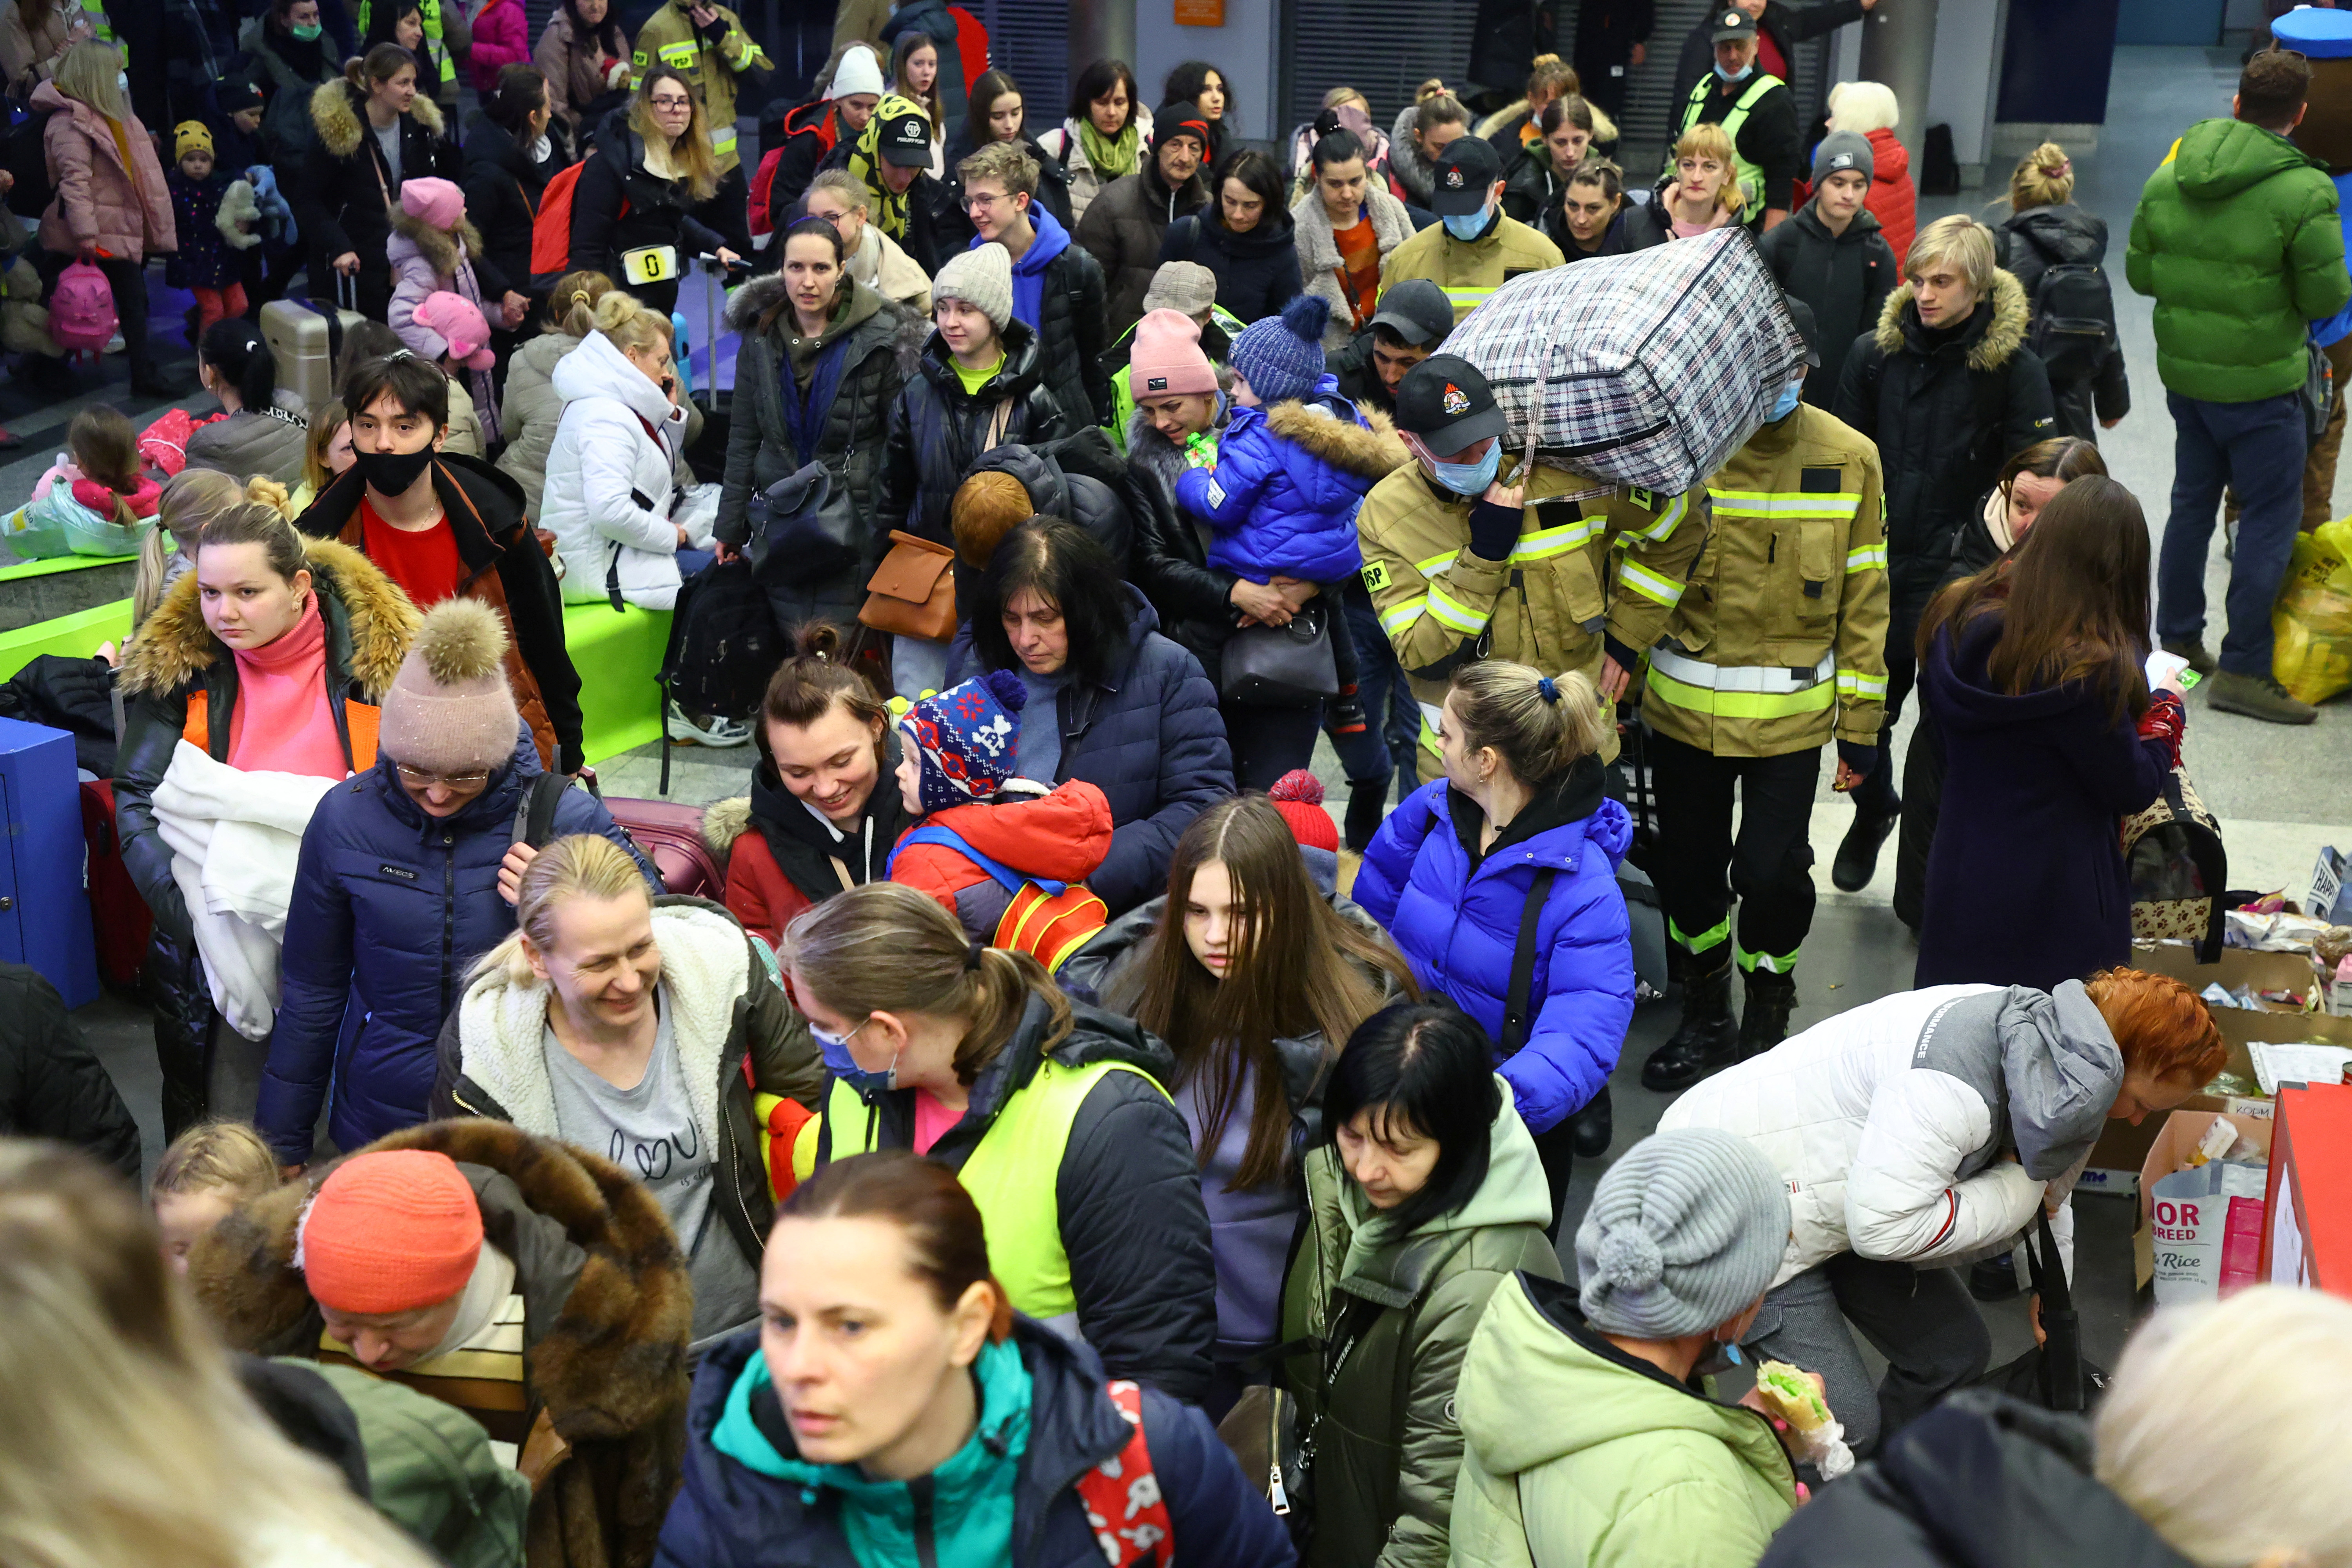 Los refugiados suben a un tren a Berlín en la estación principal de trenes, después de huir de la invasión rusa de Ucrania en Cracovia, Polonia, 15 de marzo de 2022.  REUTERS/Fabrizio Bensch